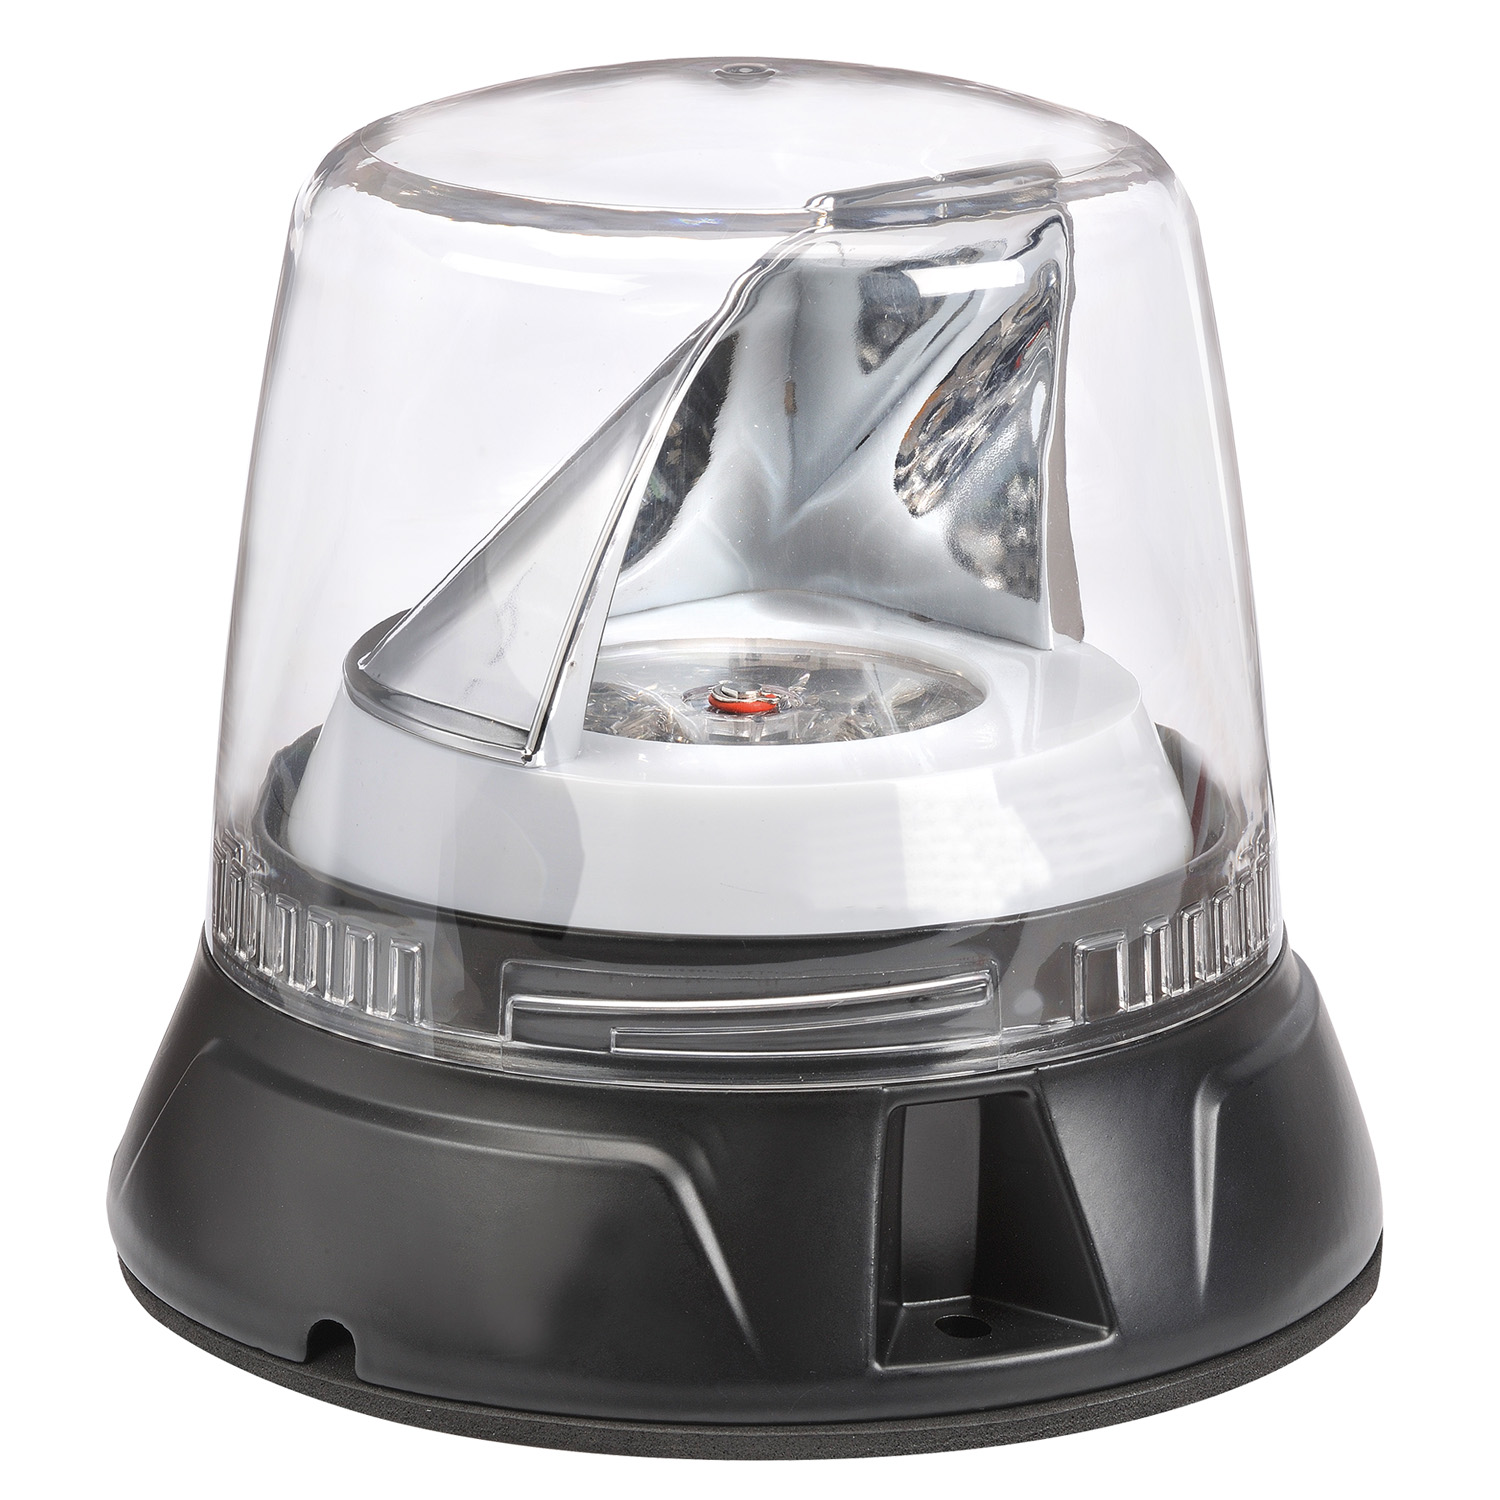 Beacon LED Light / Revolving Light / Safety Light10-80 V DC 20W